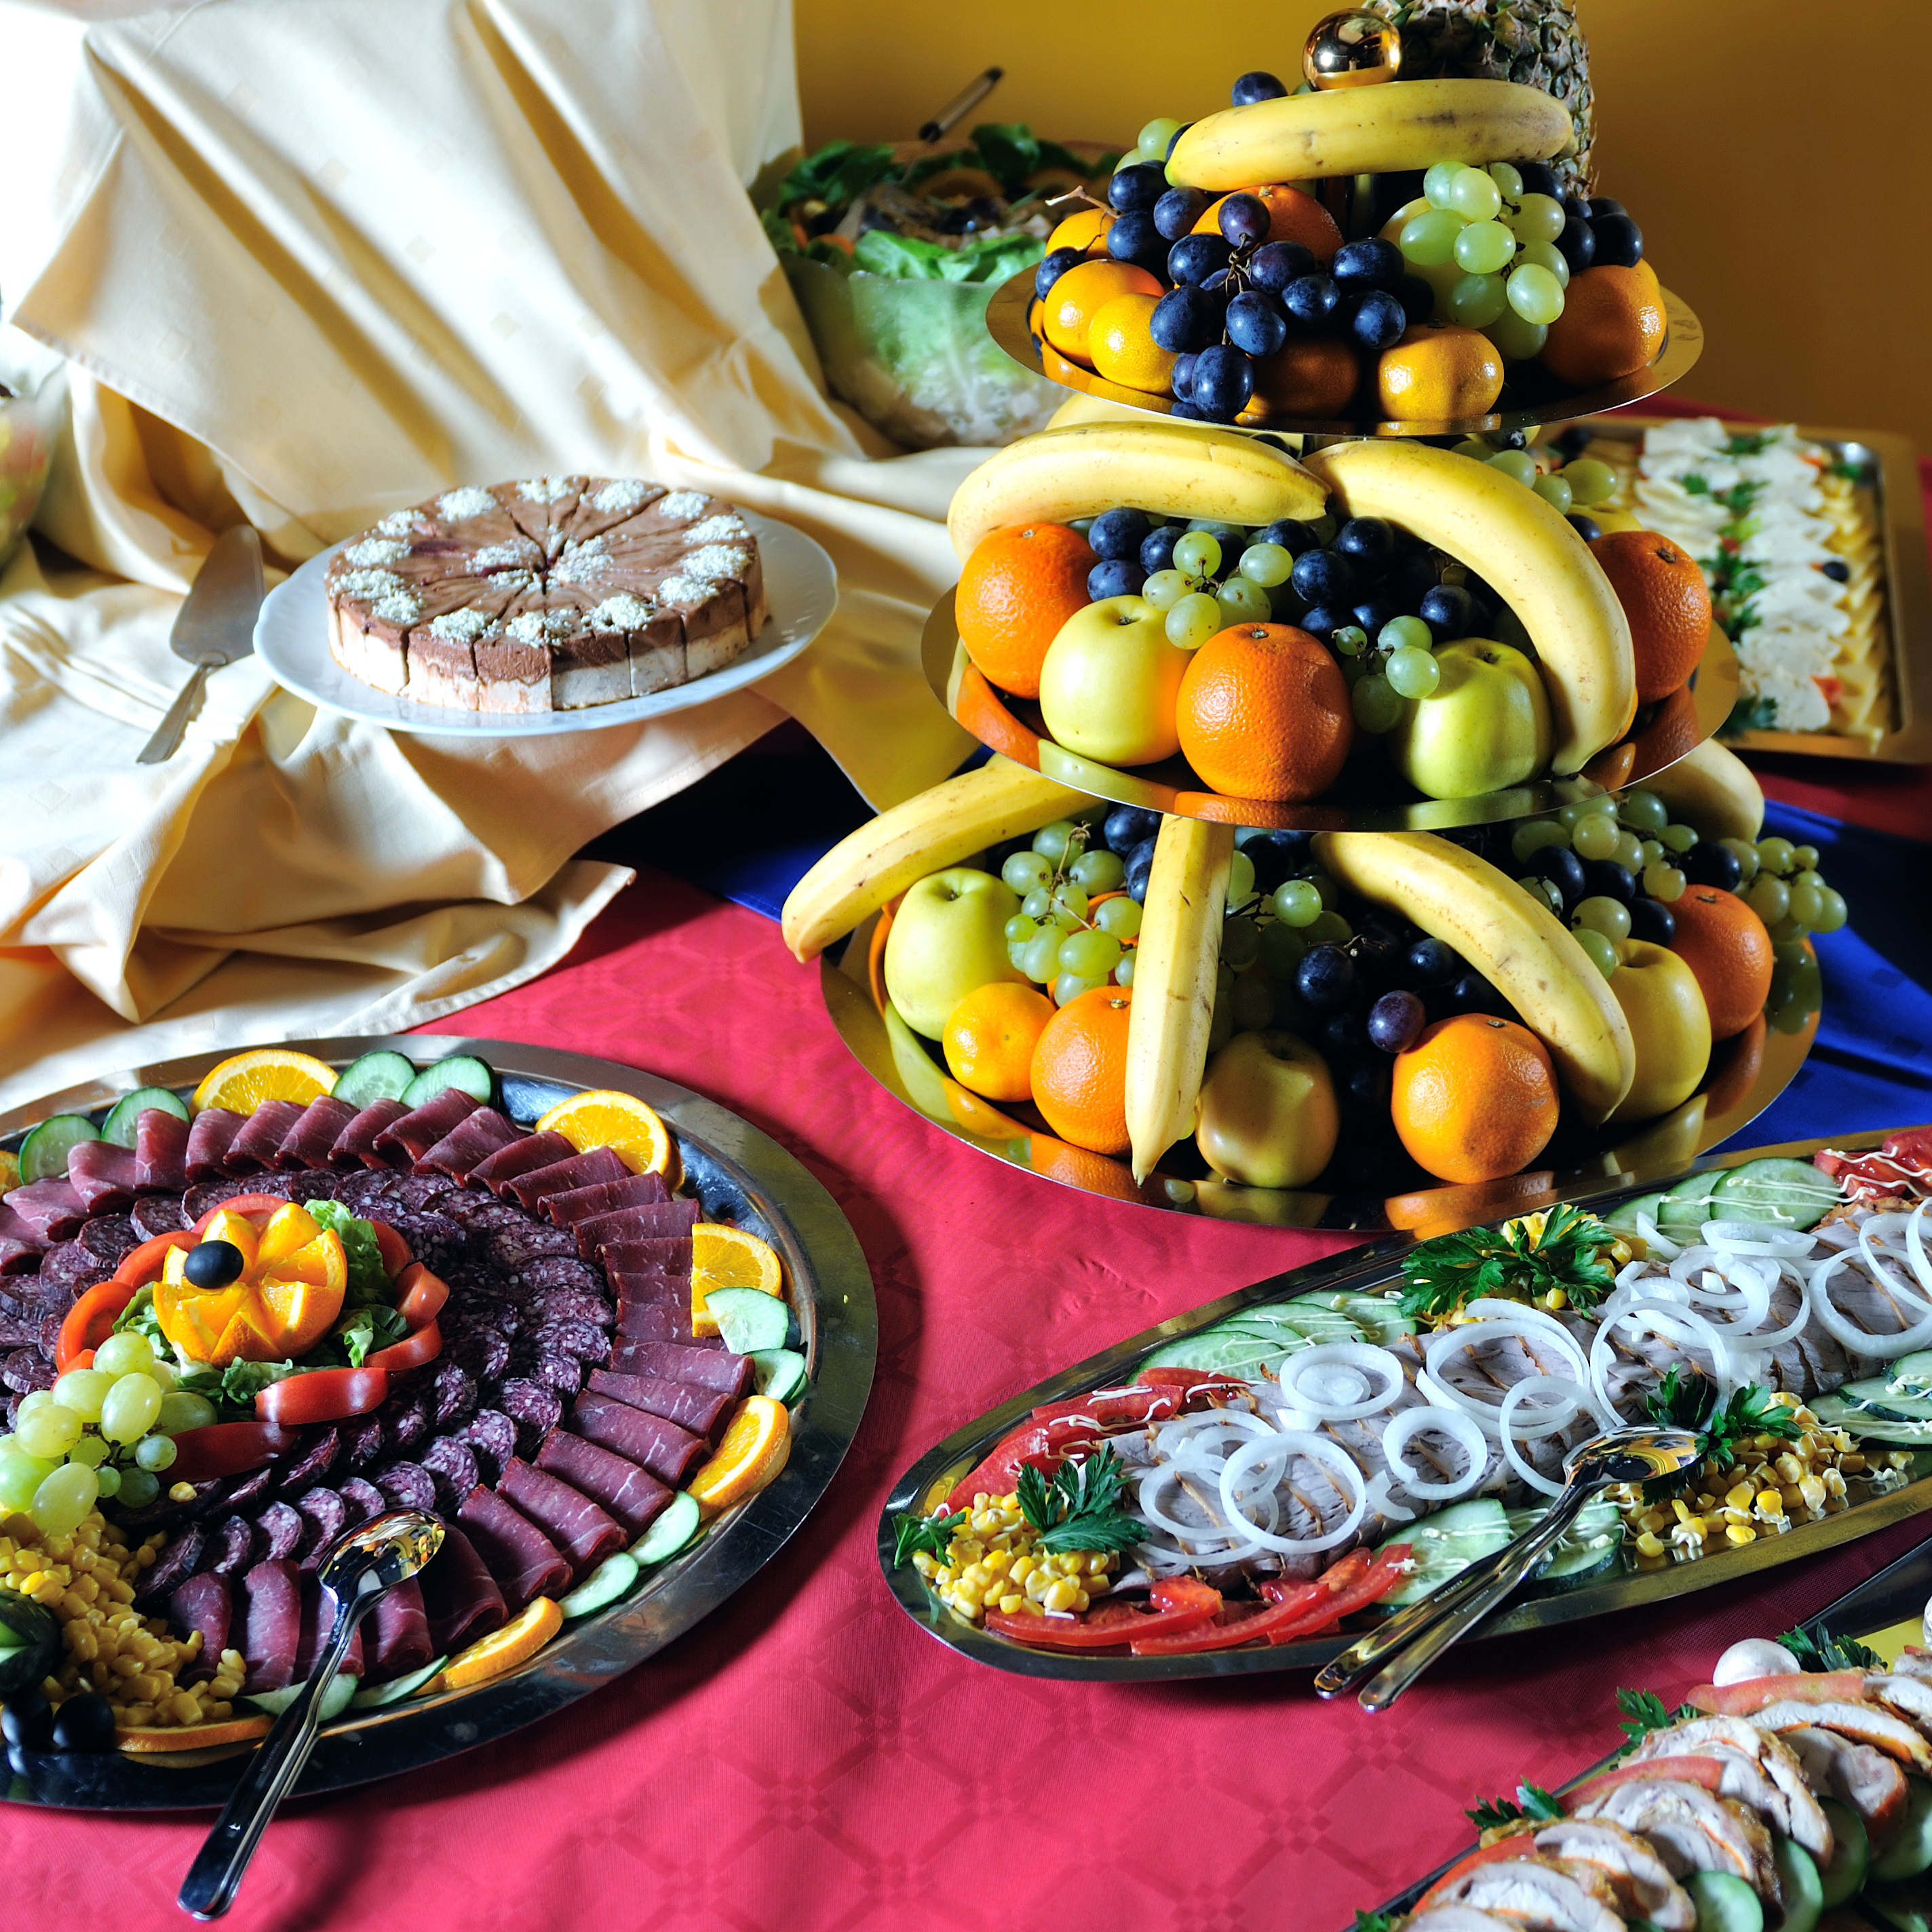 Украшение блюд праздничного стола своими руками c фото 2020